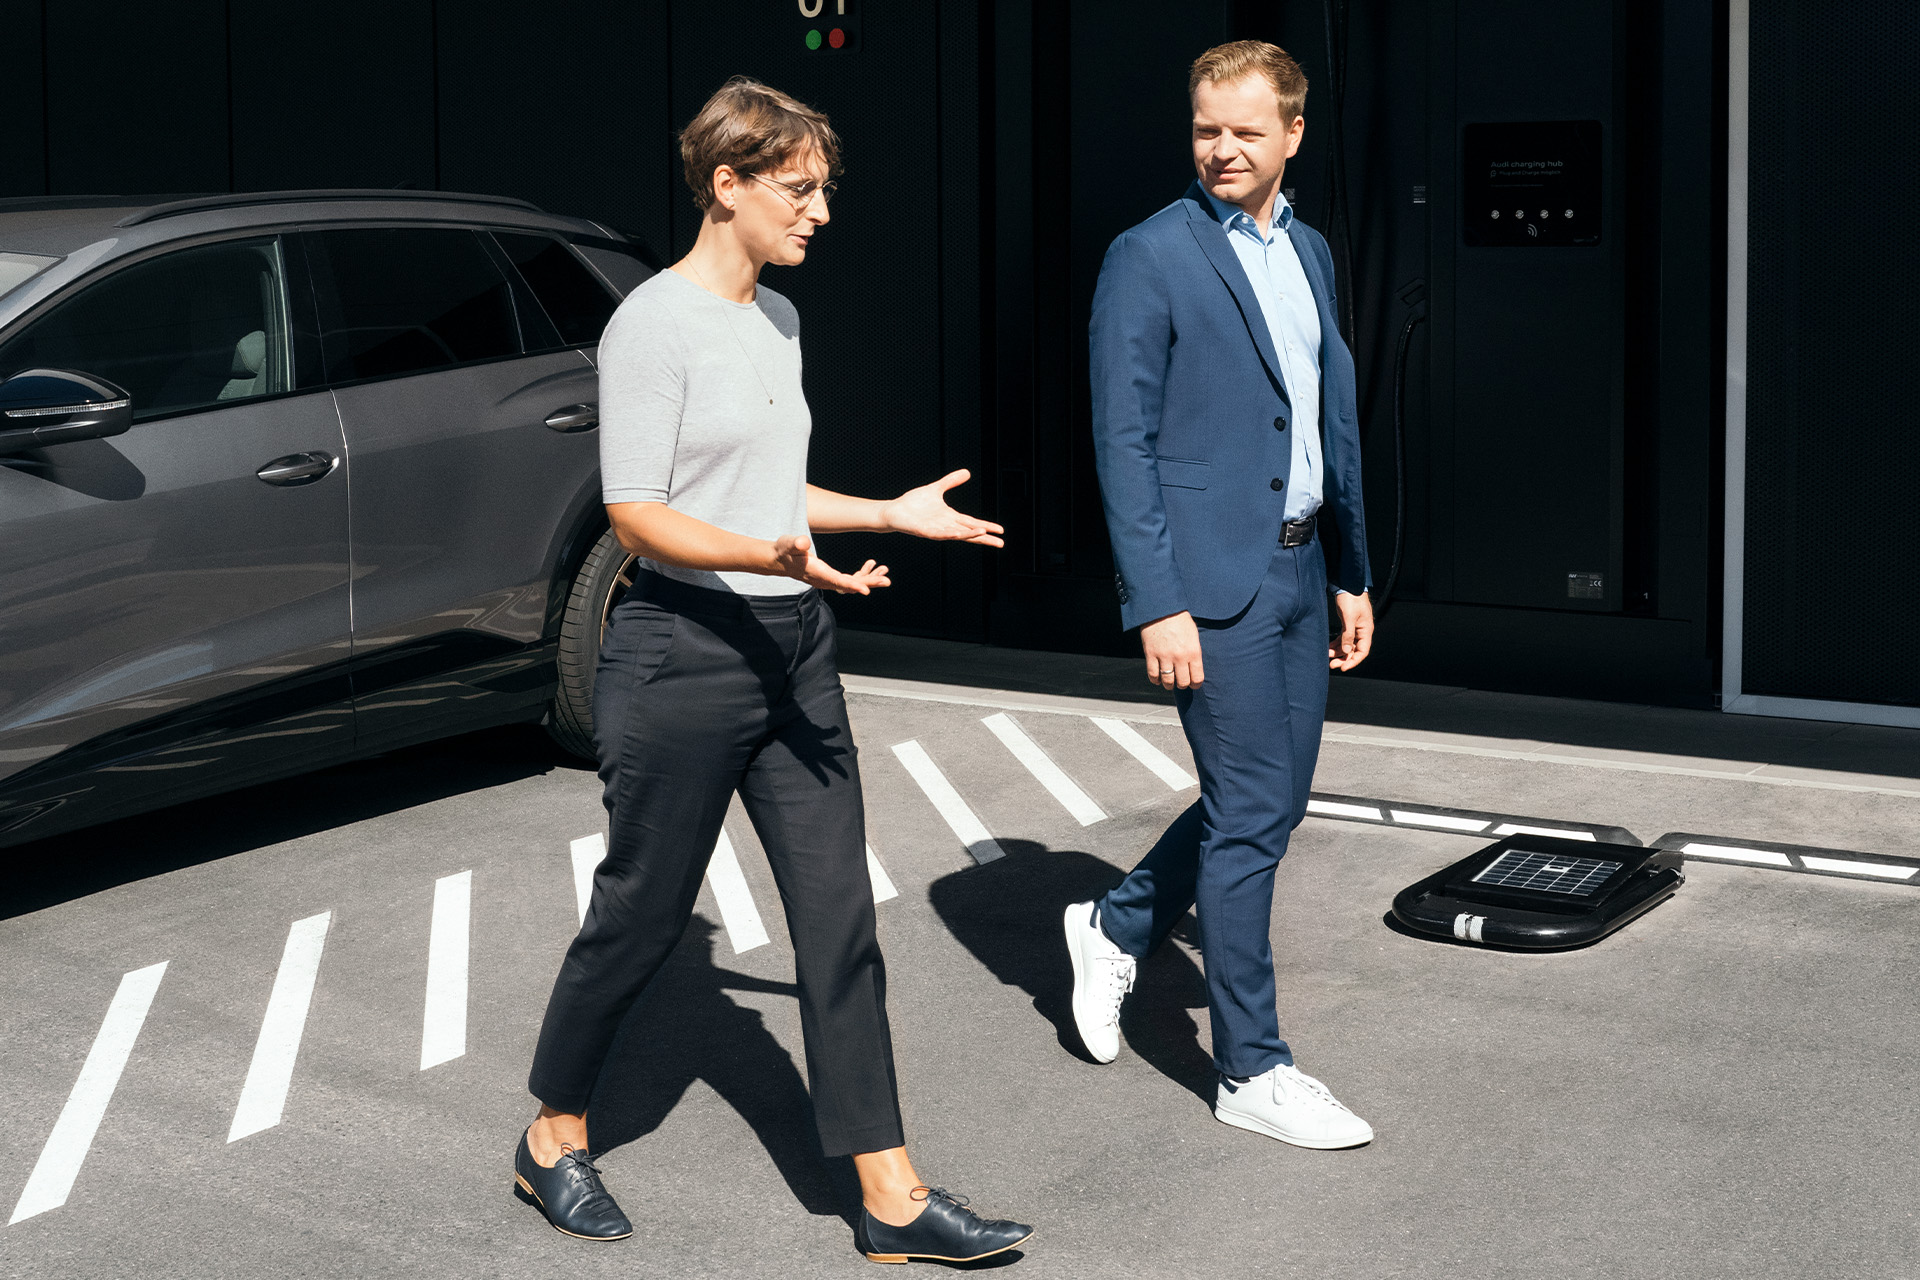 Los expertos en sostenibilidad, la Dra. Johanna Klewitz y Malte Vömel, cruzan el aparcamiento frente al centro de carga de Audi en Núremberg.